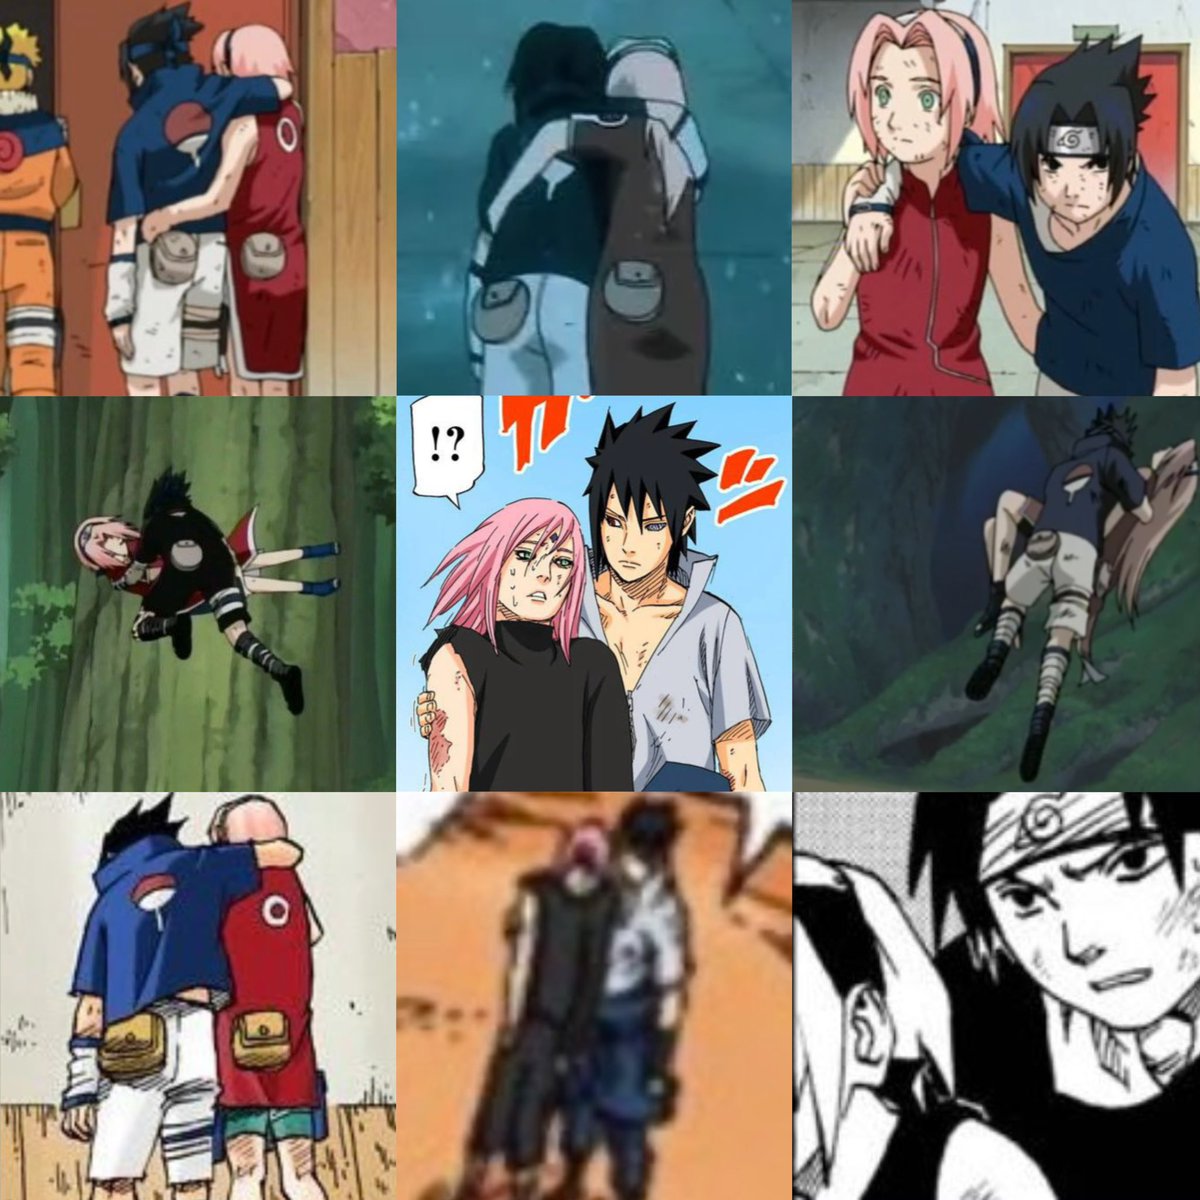 Sasuke “arm around my gf” Uchiha